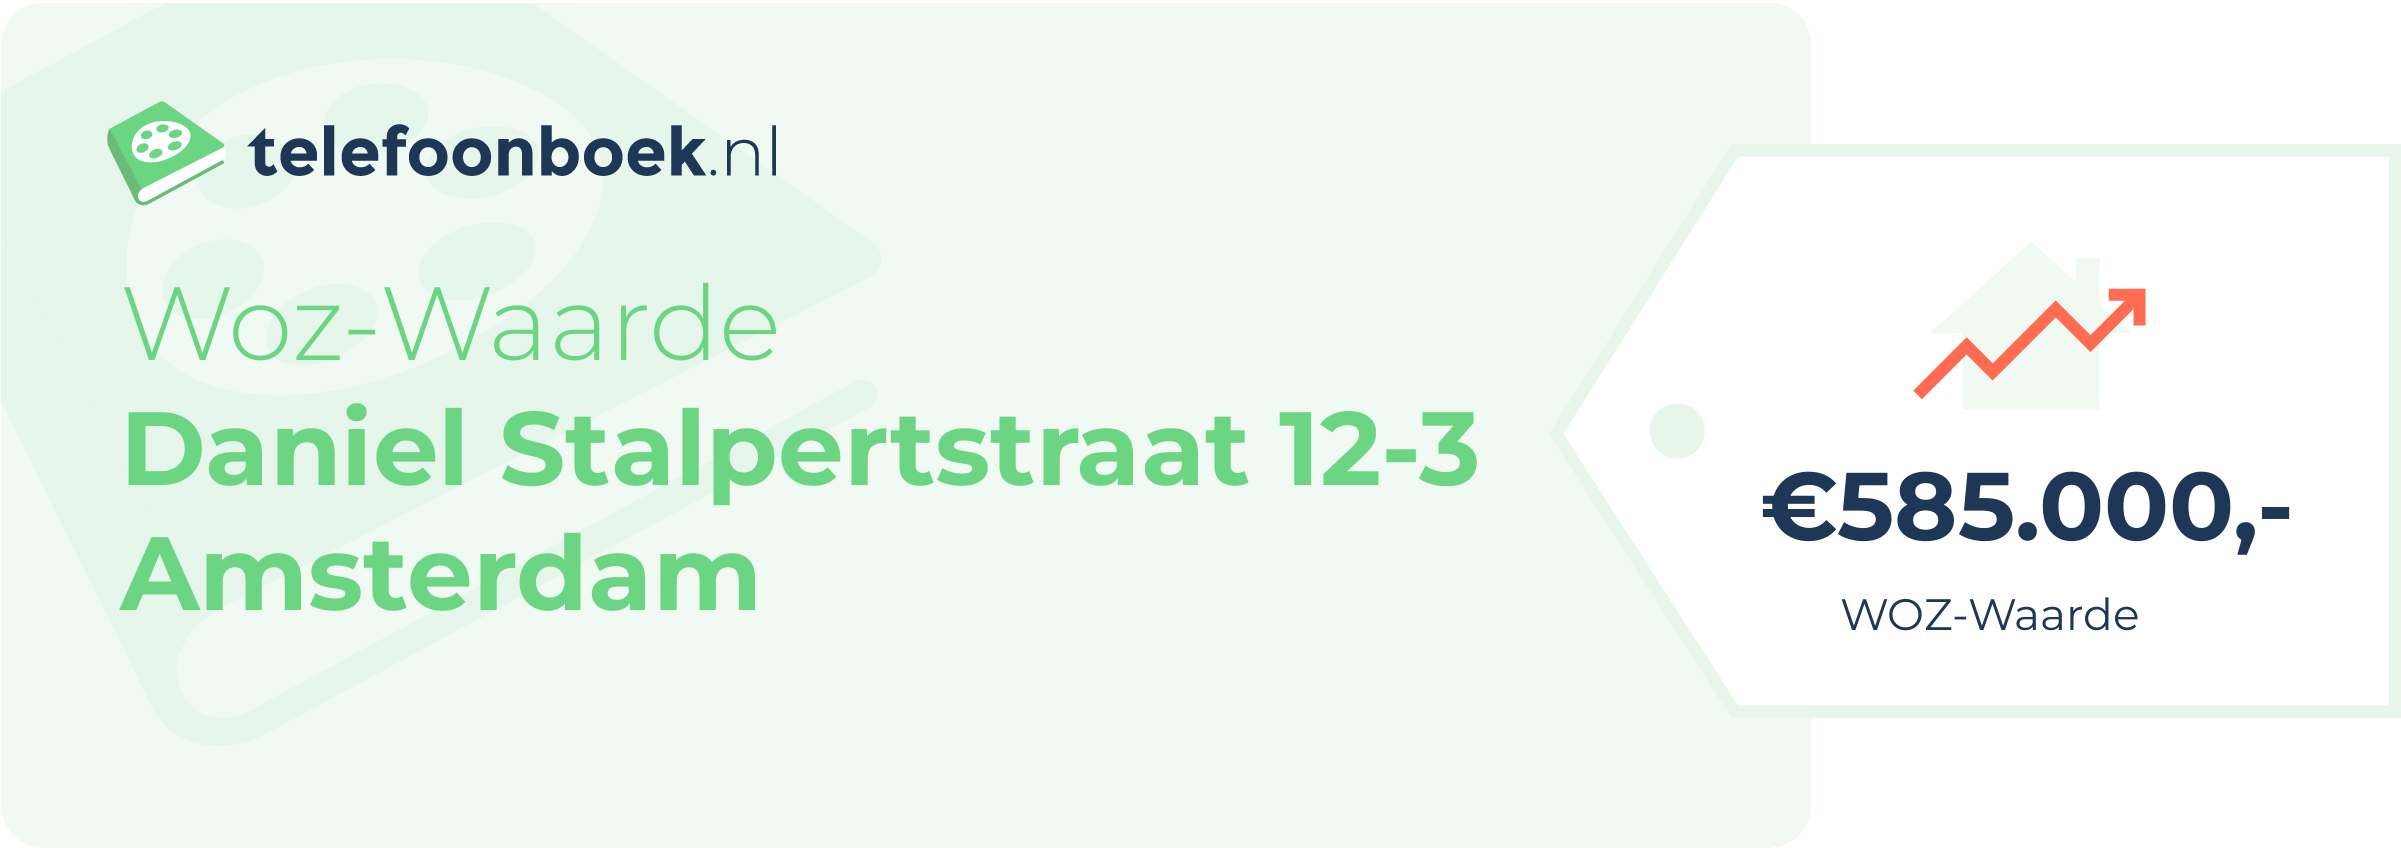 WOZ-waarde Daniel Stalpertstraat 12-3 Amsterdam